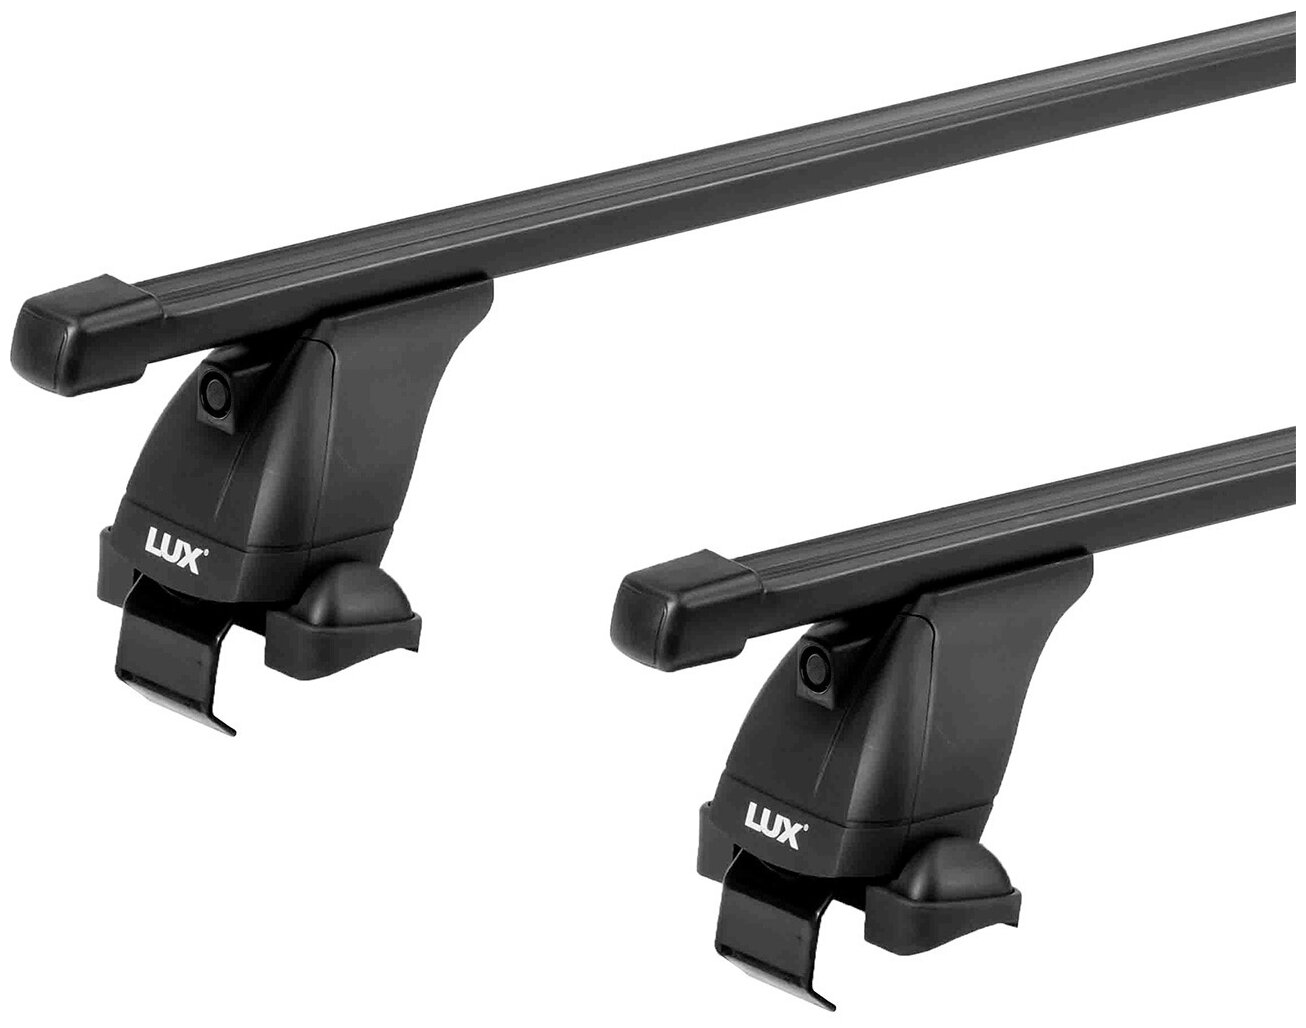 Багажная система 3 "LUX" с дугами 1,2м прямоугольными в пластике для а/м Lada Xray 2016-. г. в.